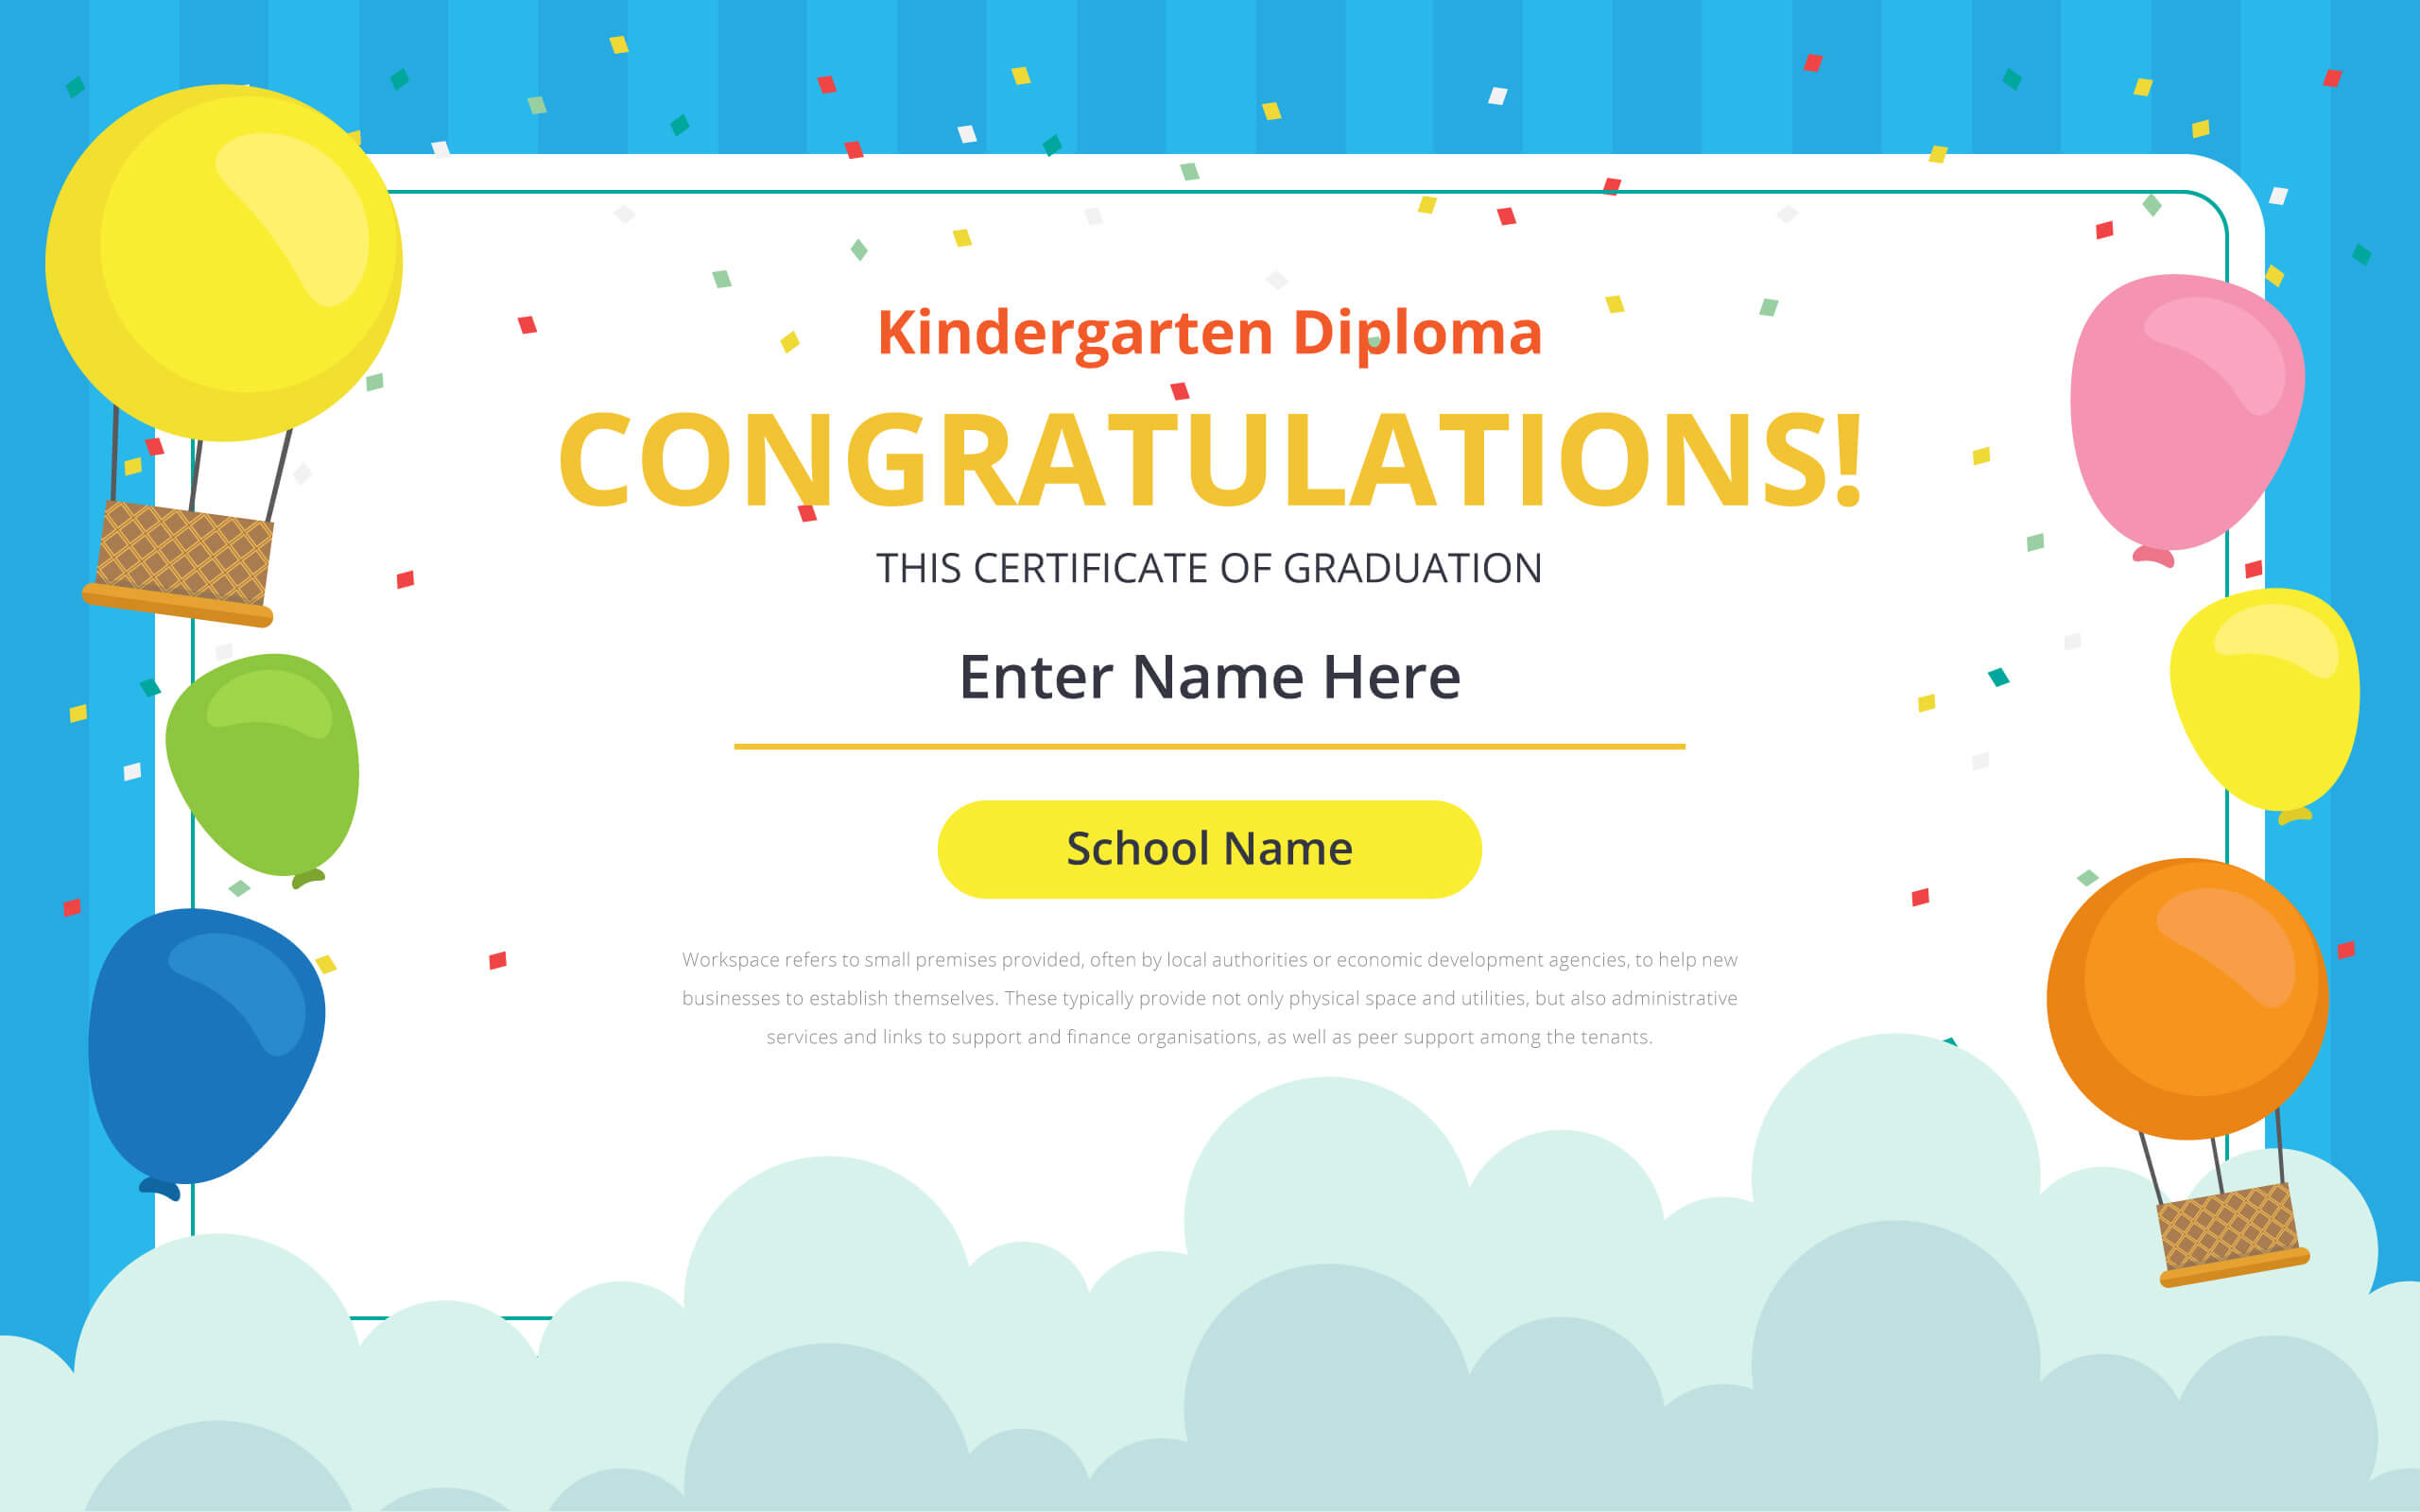 Kindergarten Certificate Free Vector Art – (21 Free Downloads) With Free School Certificate Templates